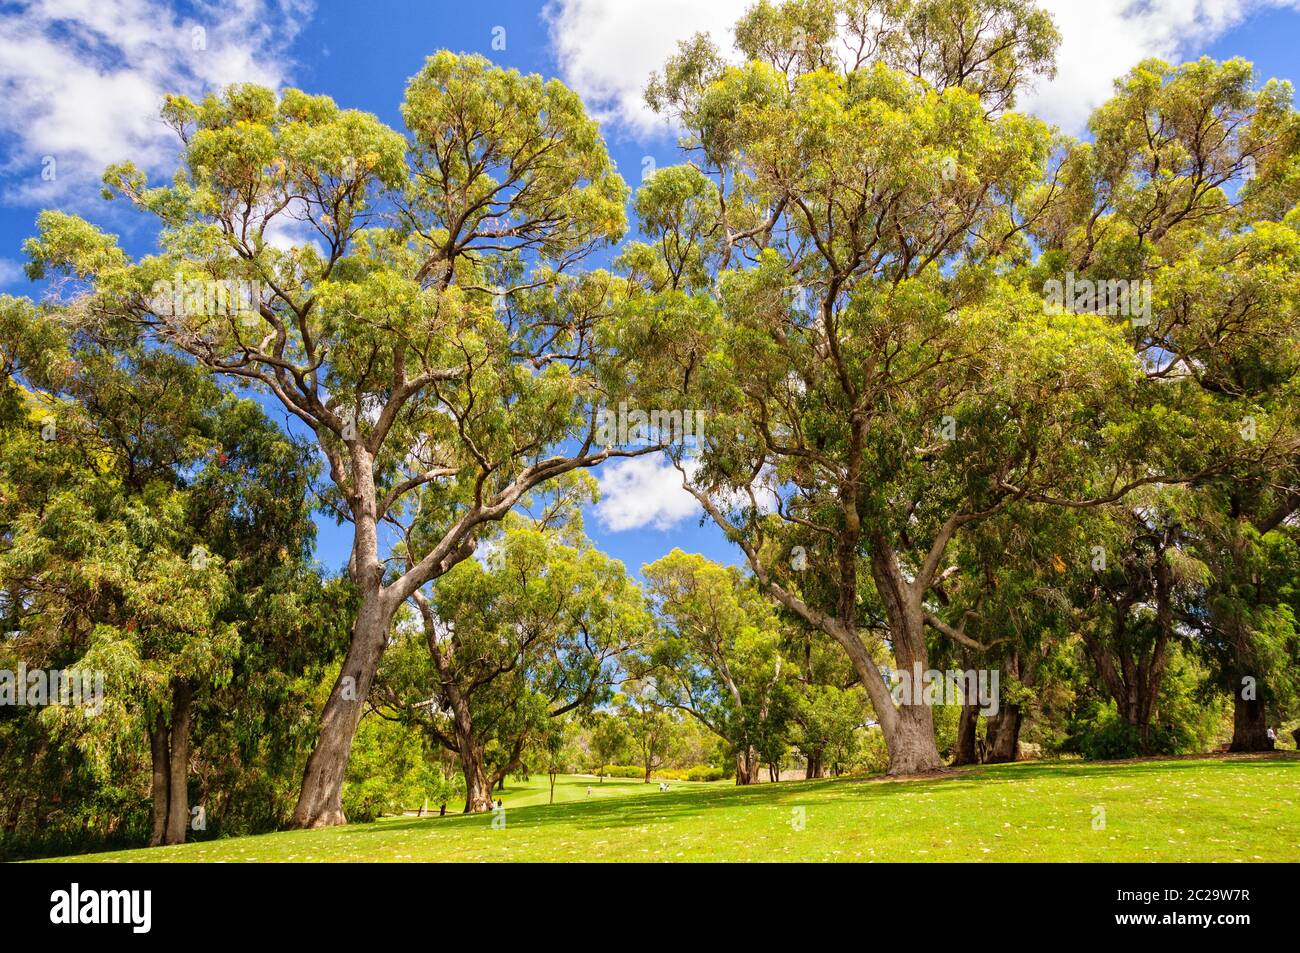 Kings Park und Botanischer Garten ist eine schöne Mischung aus begrünten Parkanlage, botanischen Gärten und natürlichem Buschland auf dem Mount Eliza - Perth, WA, Australien Stockfoto